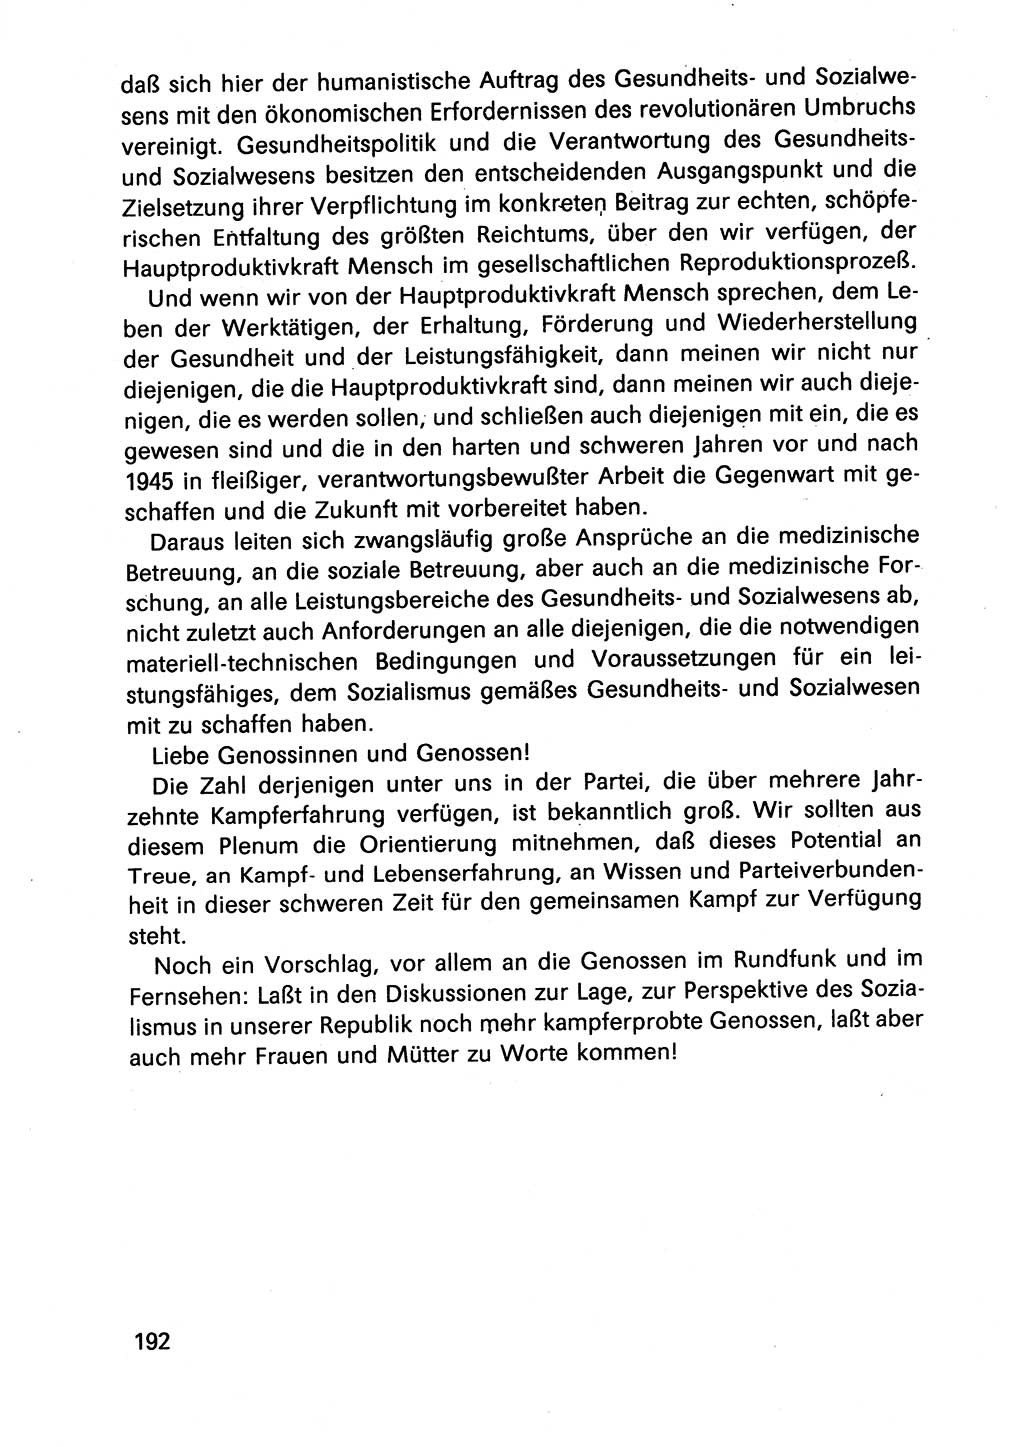 Diskussionsbeiträge, 10. Tagung des ZK (Zentralkomitee) der SED (Sozialistische Einheitspartei Deutschlands) [Deutsche Demokratische Republik (DDR)] 1989, Seite 192 (Disk.-Beitr. 10. Tg. ZK SED DDR 1989, S. 192)